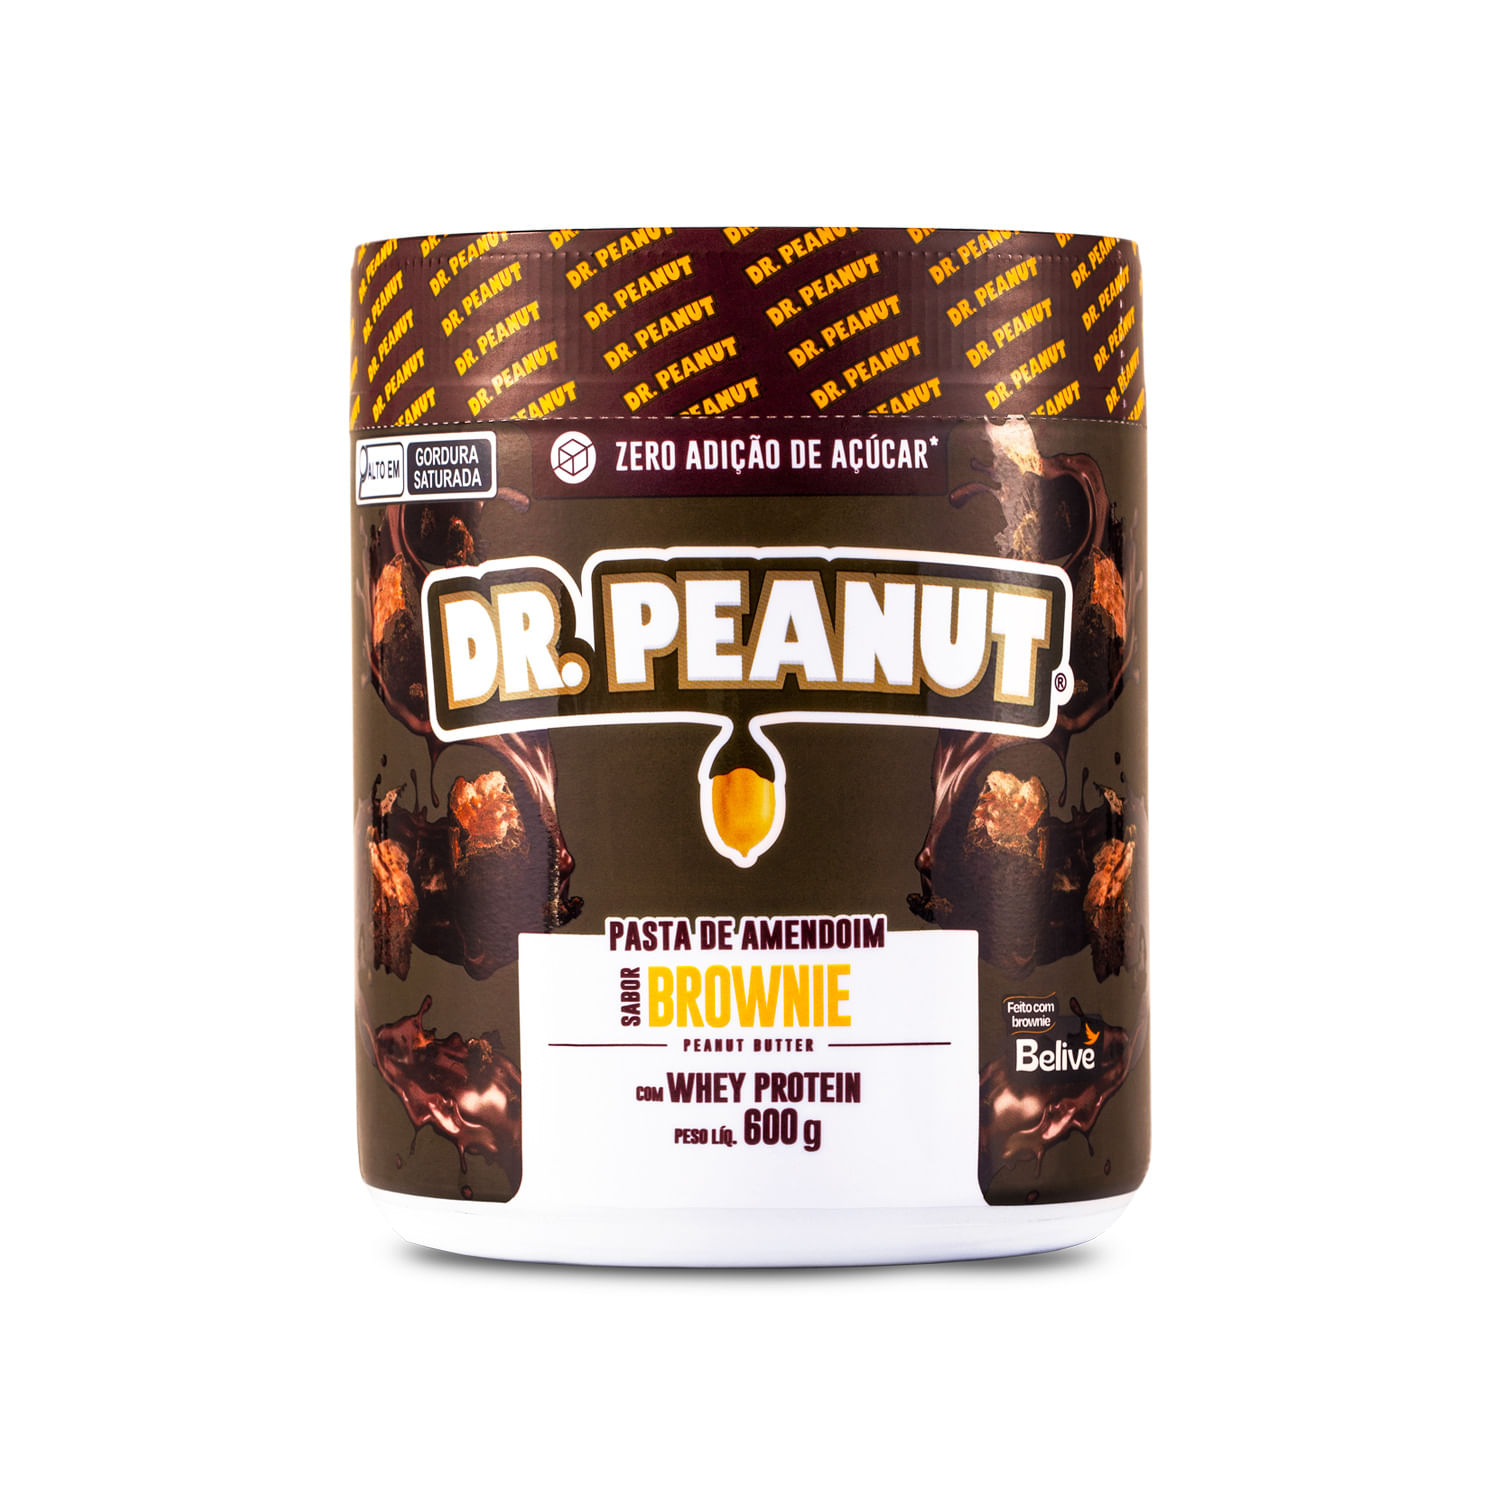 Pasta de Amendoim Bueníssimo - Dr. Peanut  Loja do Empório Natural - Loja  do Empório Natural - Sua vida mais saudável